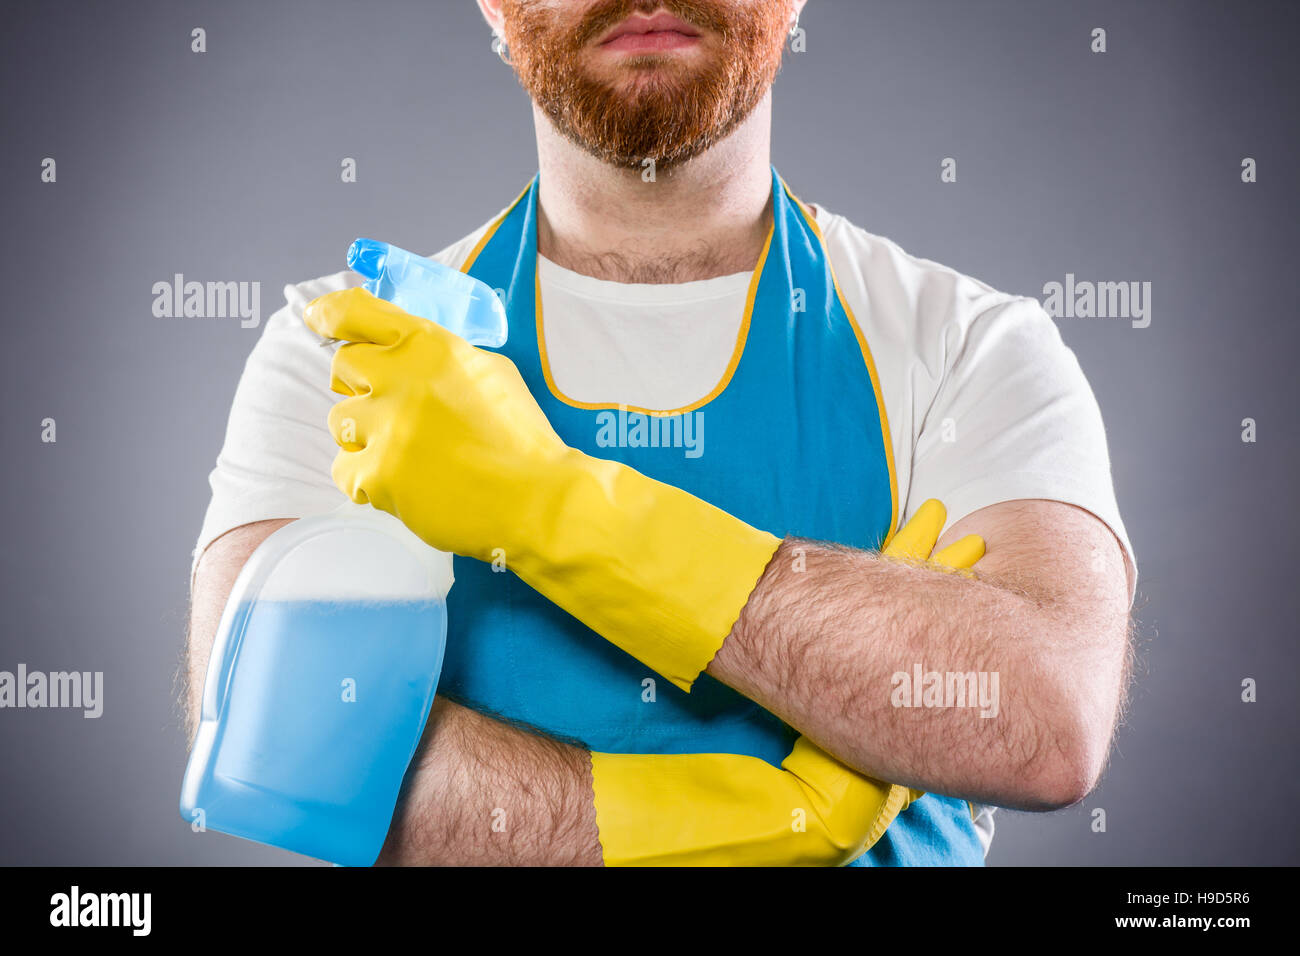 El limpiador al hombre con los brazos cruzados sosteniendo un detergente vistiendo un delantal y guantes de plástico Foto de stock